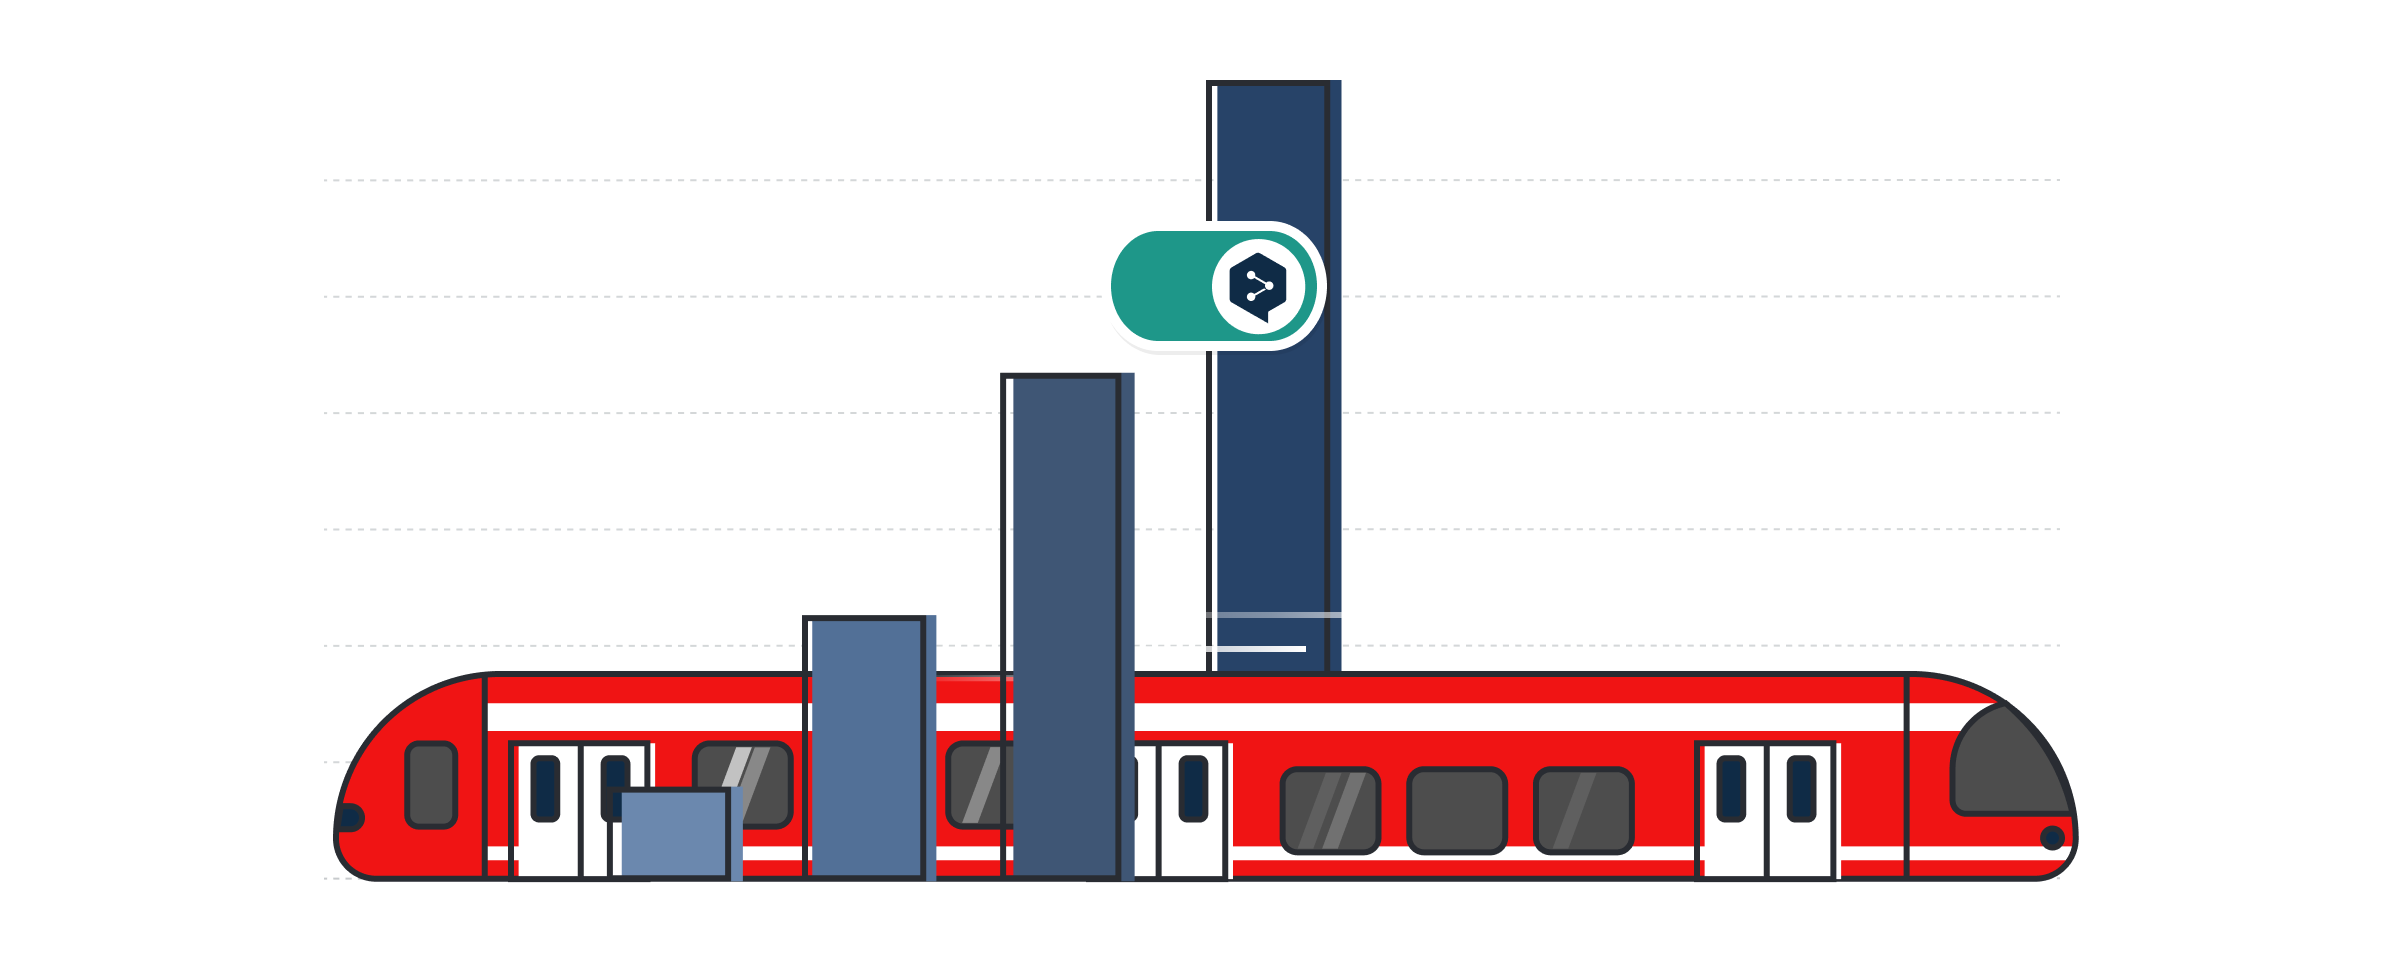 Ilustracja przedstawiająca czerwony pociąg DB i logo DeepL Pro, które znajduje się na wykresie słupkowym